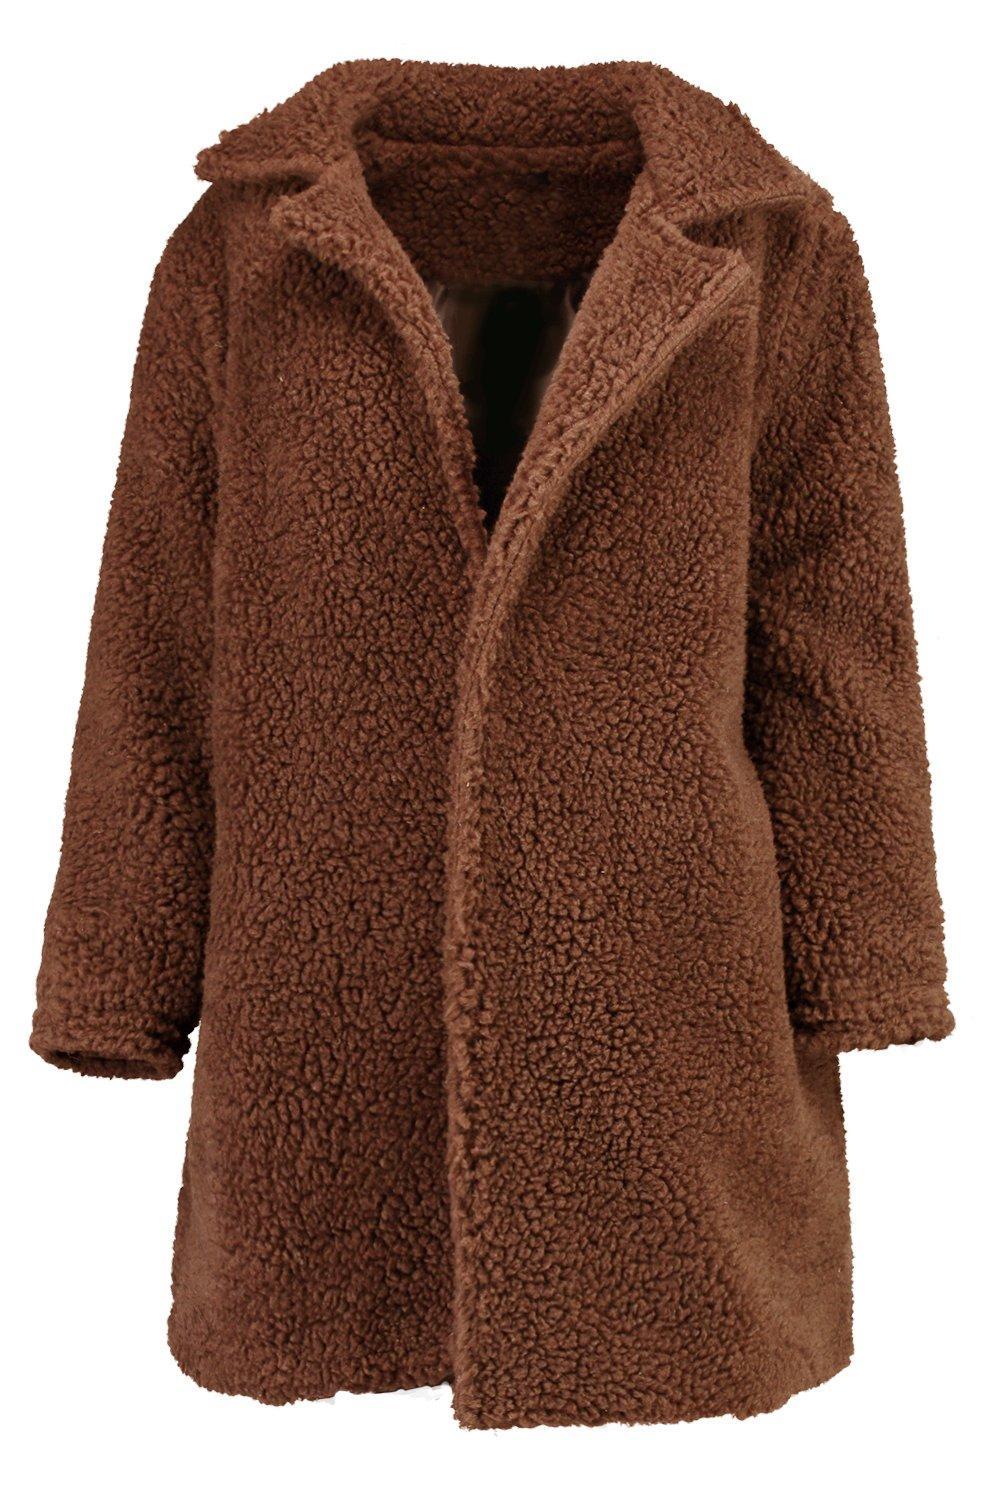 Boohoo Phoebe Teddy Fur Coat in Mushroom (Brown) - Lyst